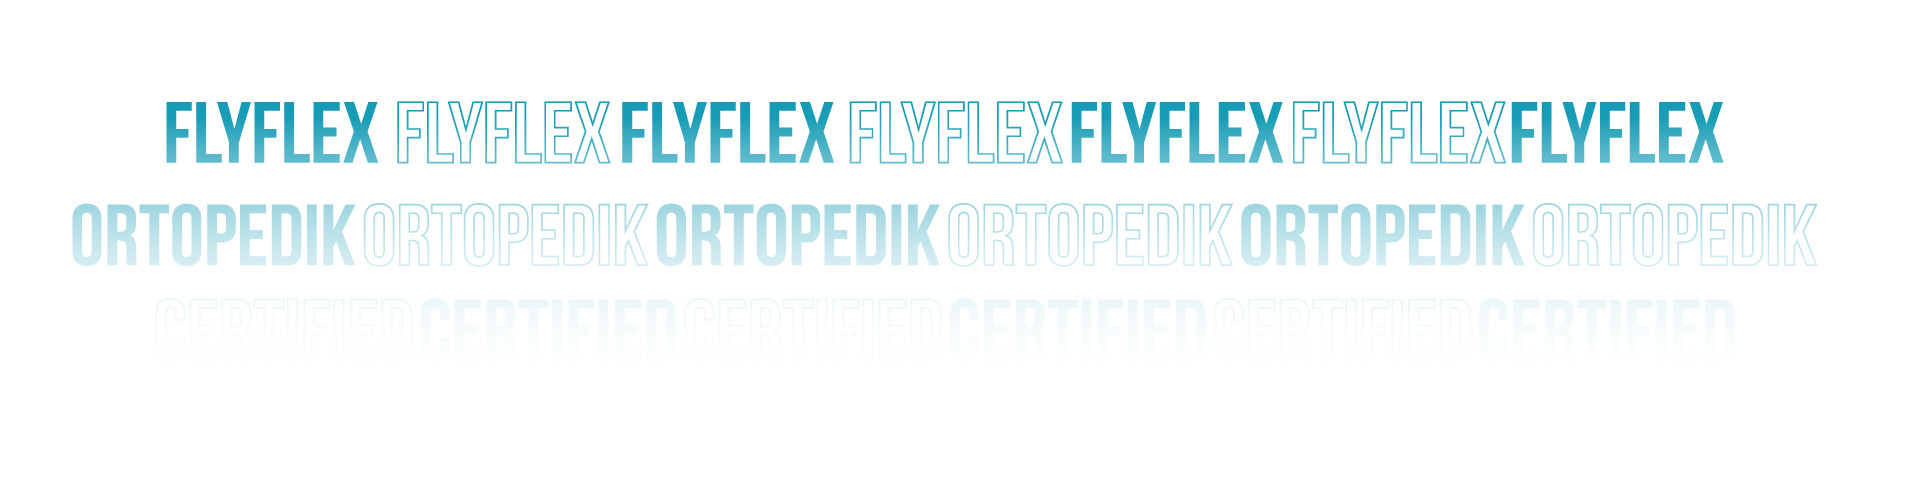 FlyflexOutline